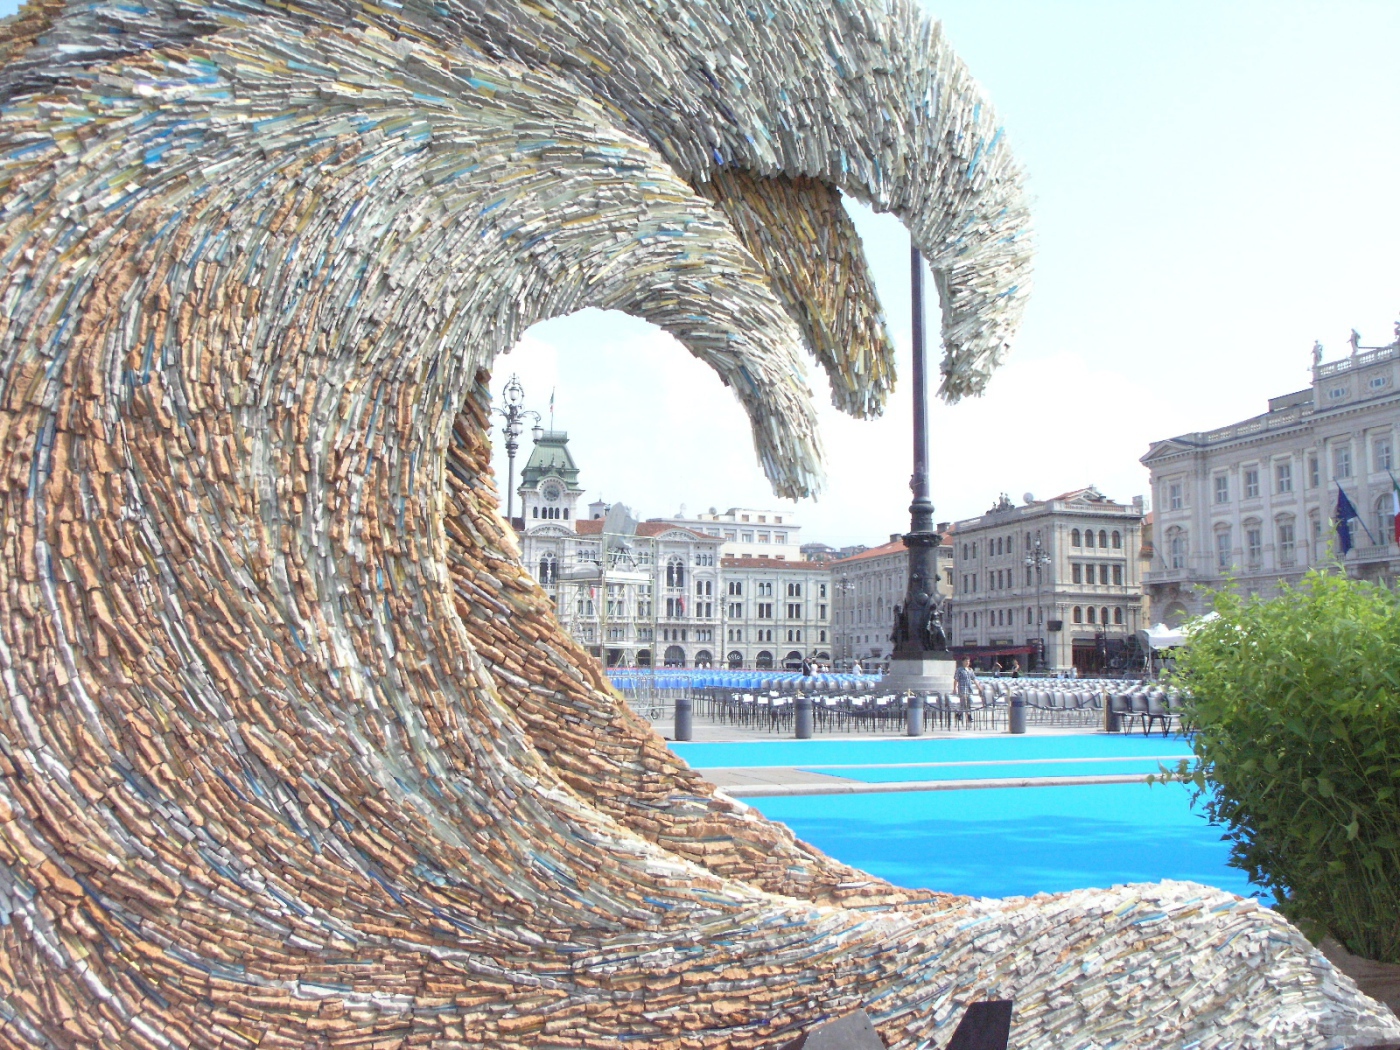 Скульптура на курорте в Триесте, Италия